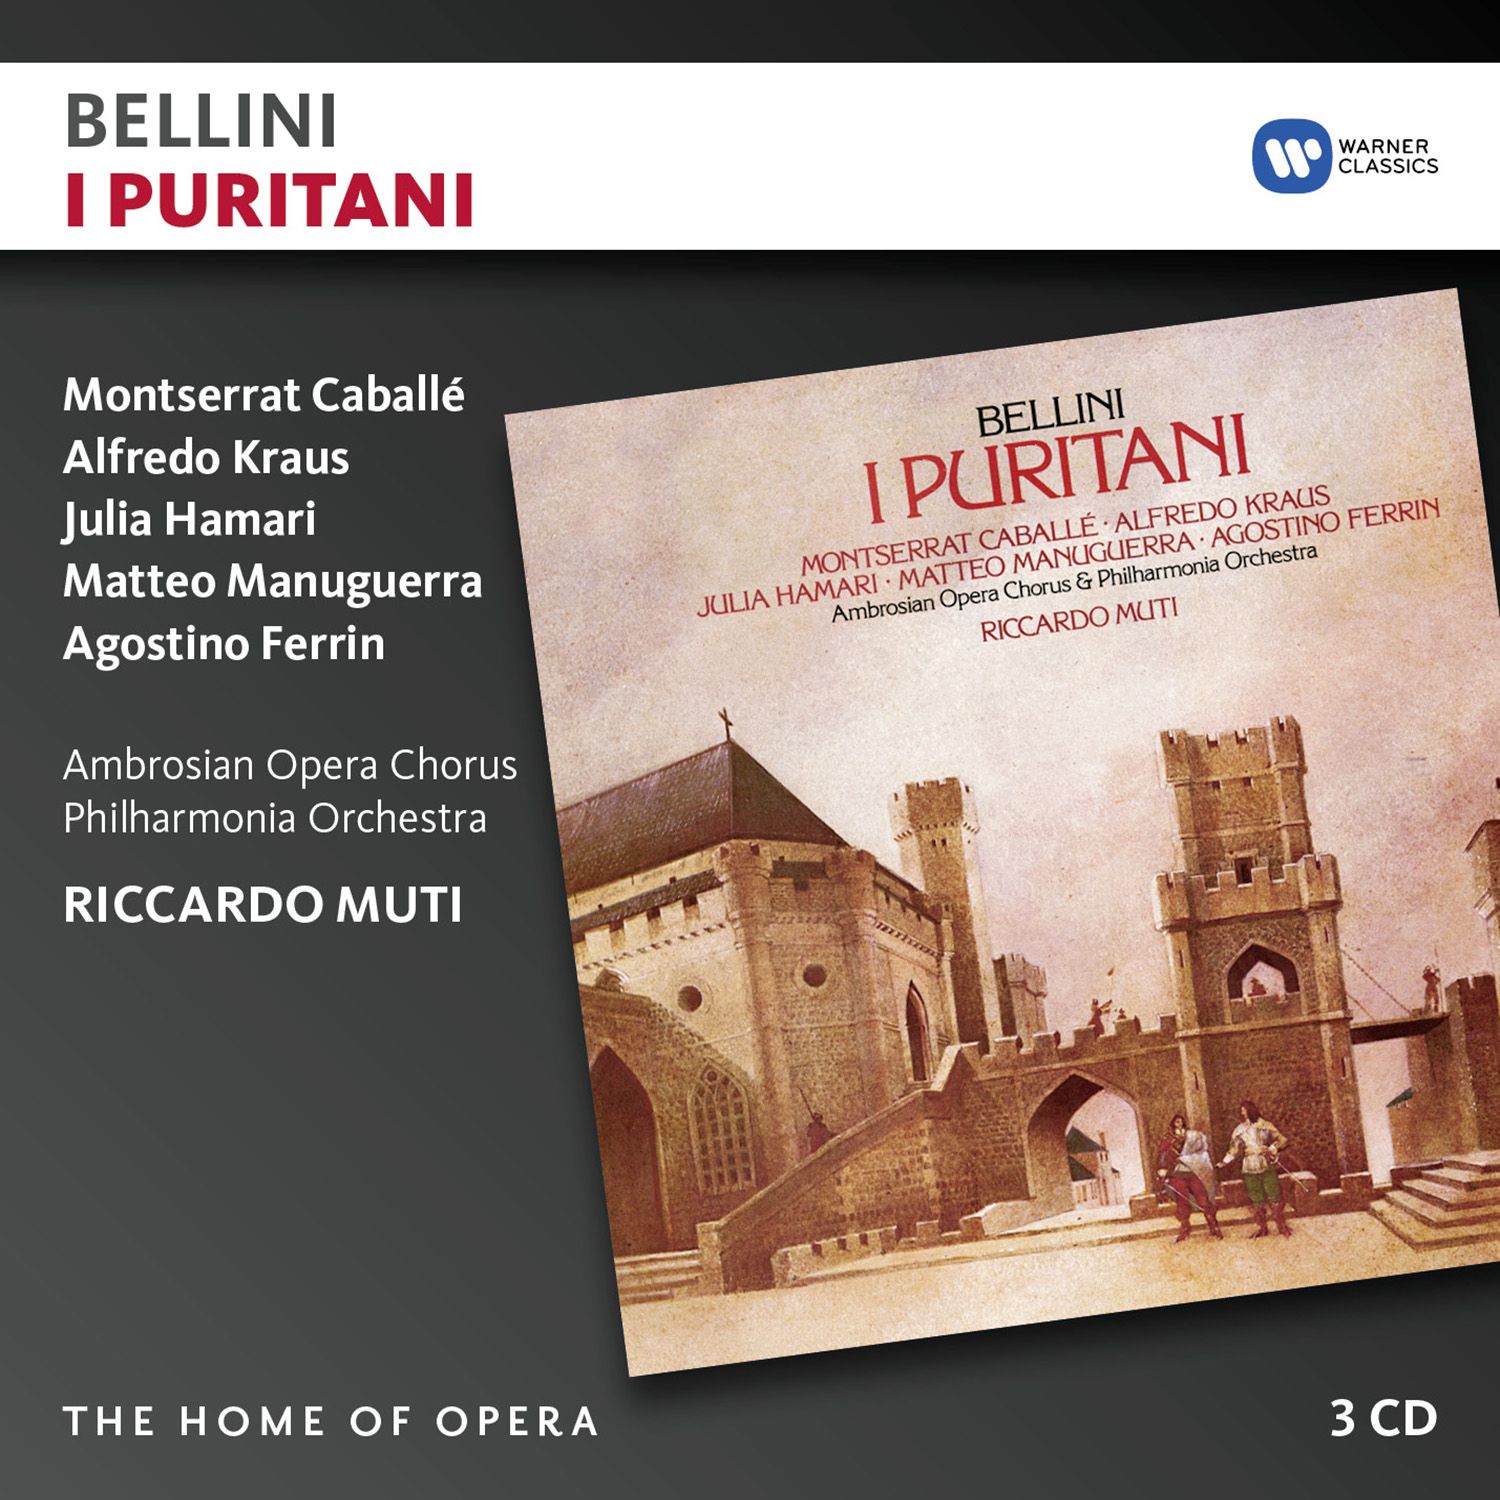 I Puritani (1988 Remastered Version), Act I, Scena prima: A festa! (Coro)